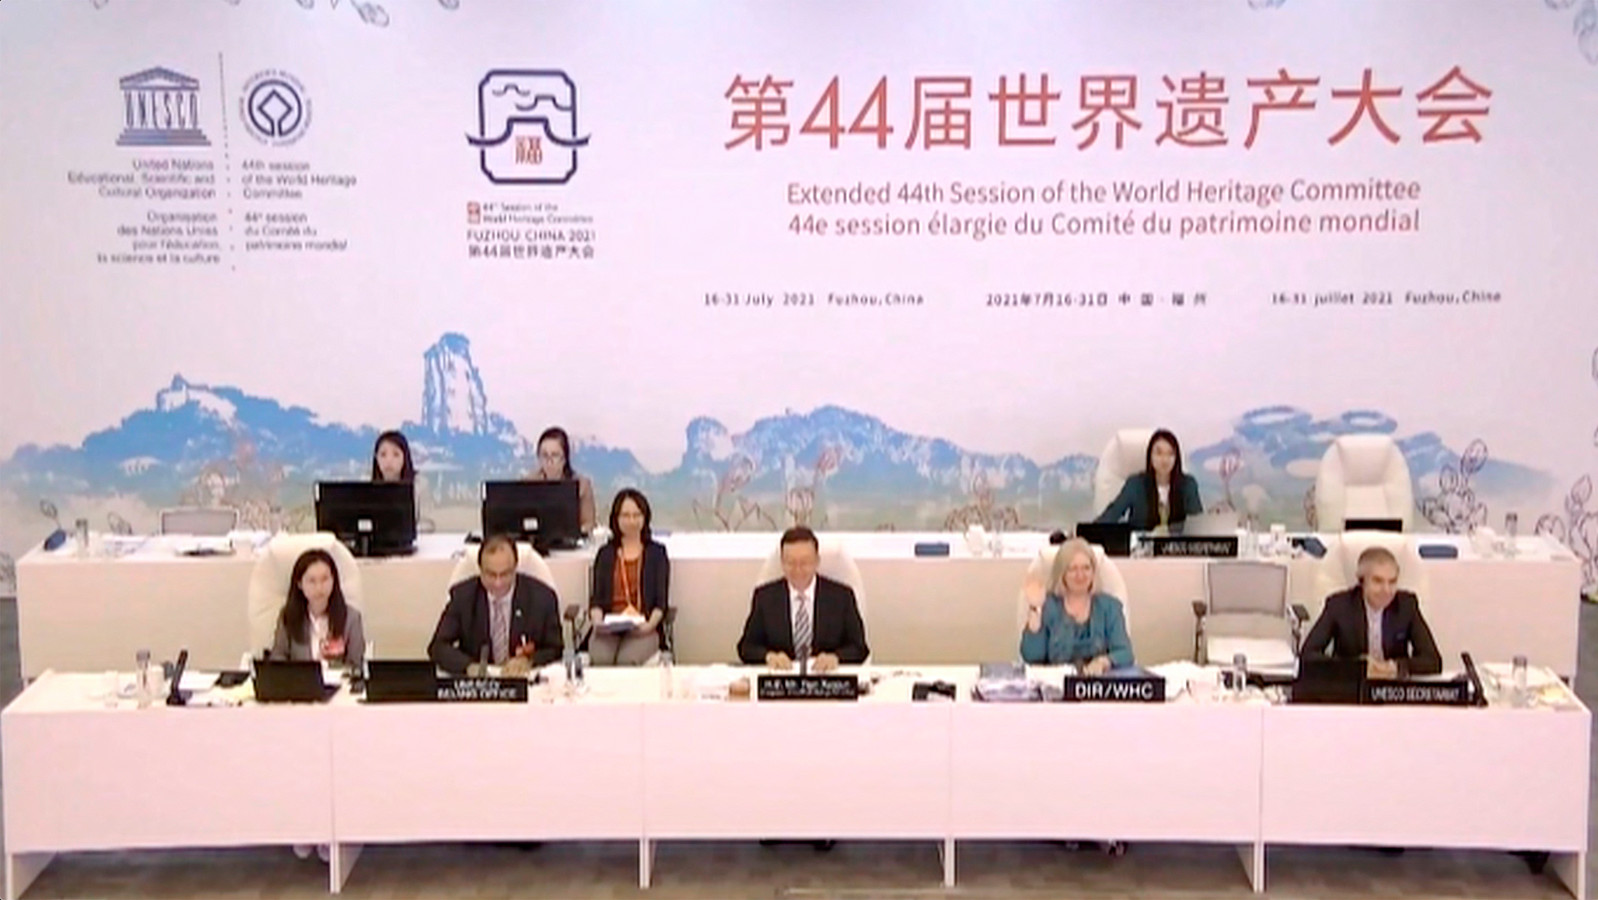 Unesco vergadert nog tot het einde van deze maand online in Fuzhou in China.